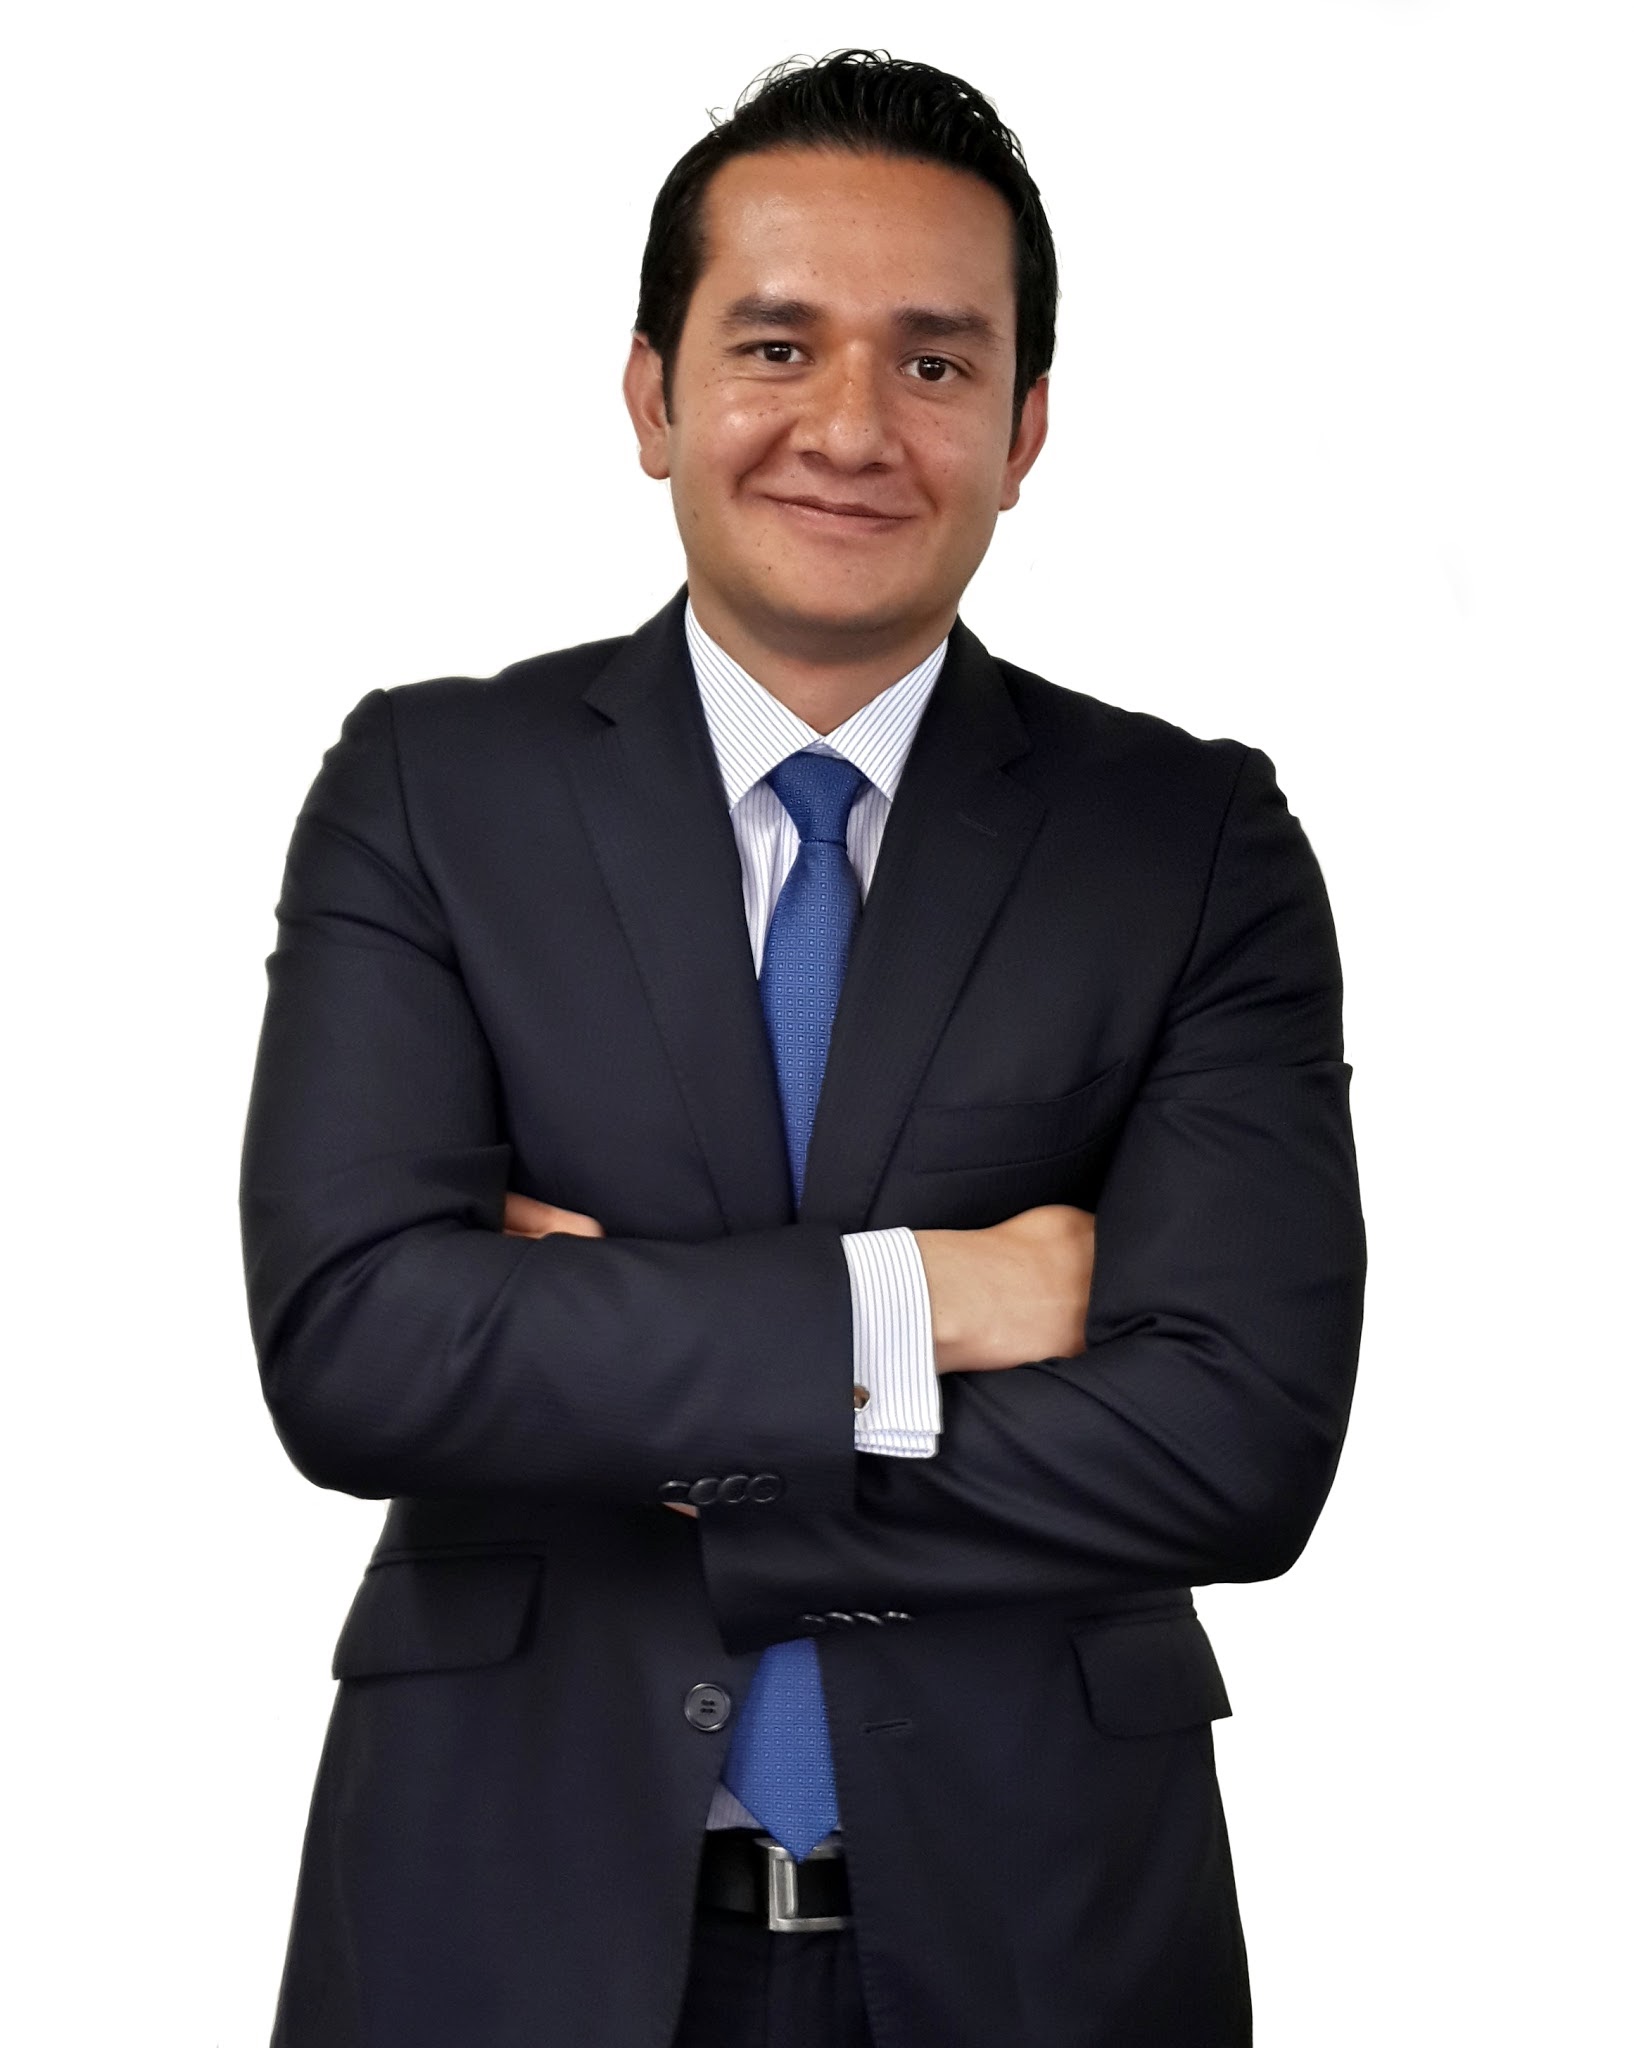 Luis Enrique Mejía